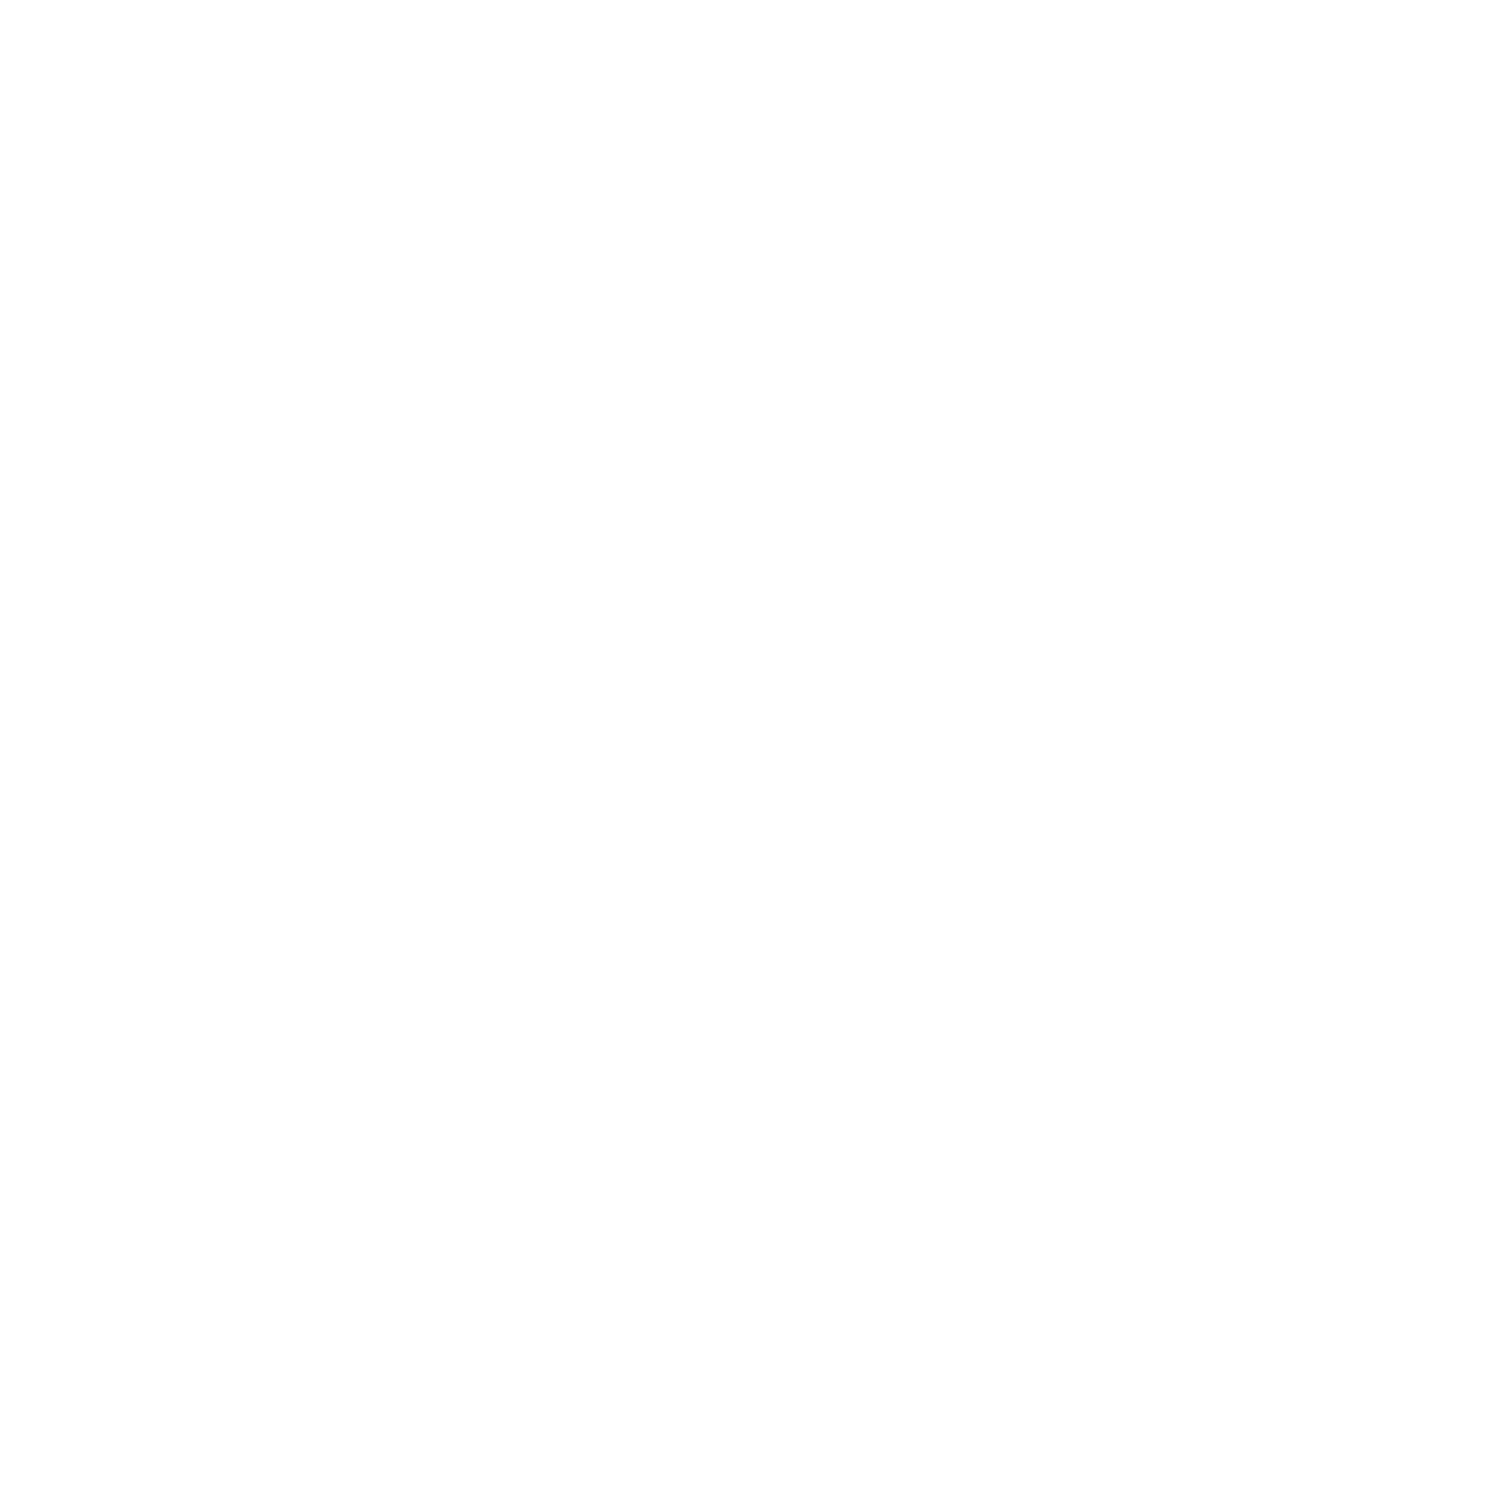 RIDE-A-ROUND.cc